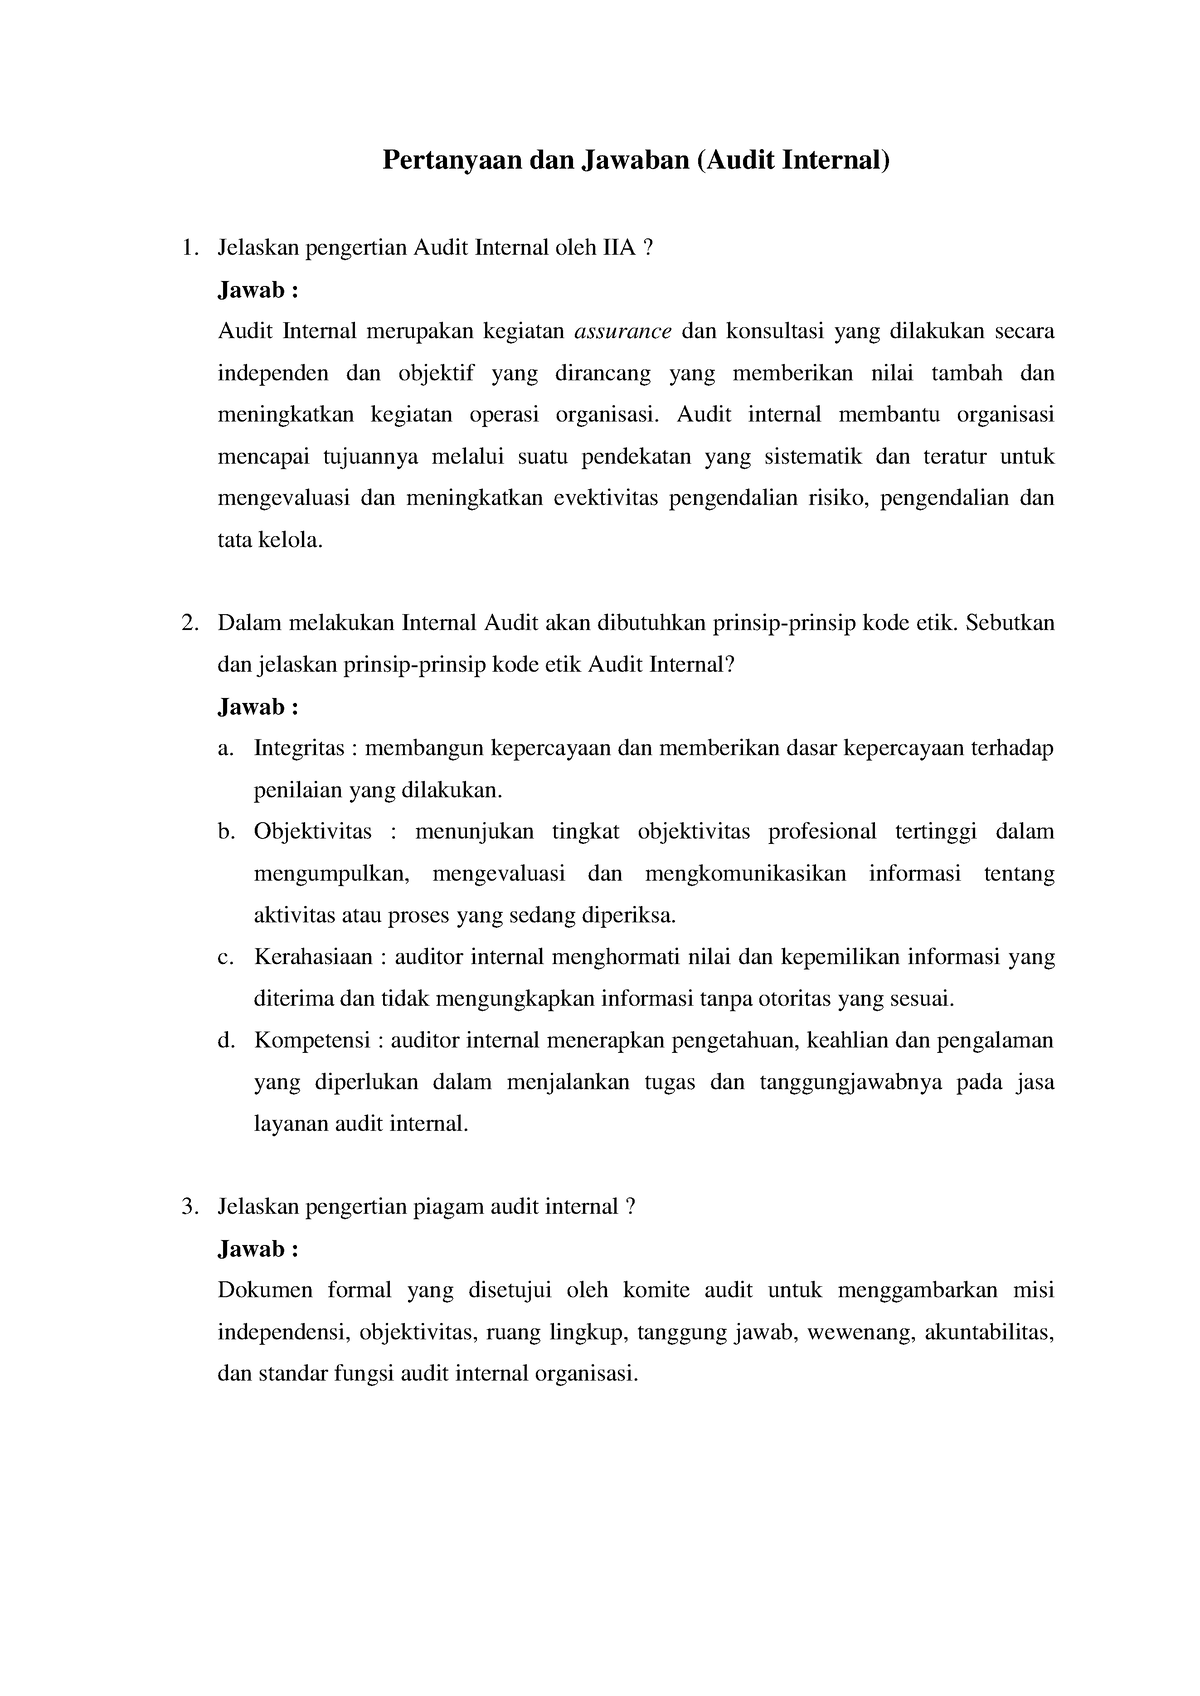 Soal-soal audit internal 7 - Pertanyaan dan Jawaban (Audit Internal